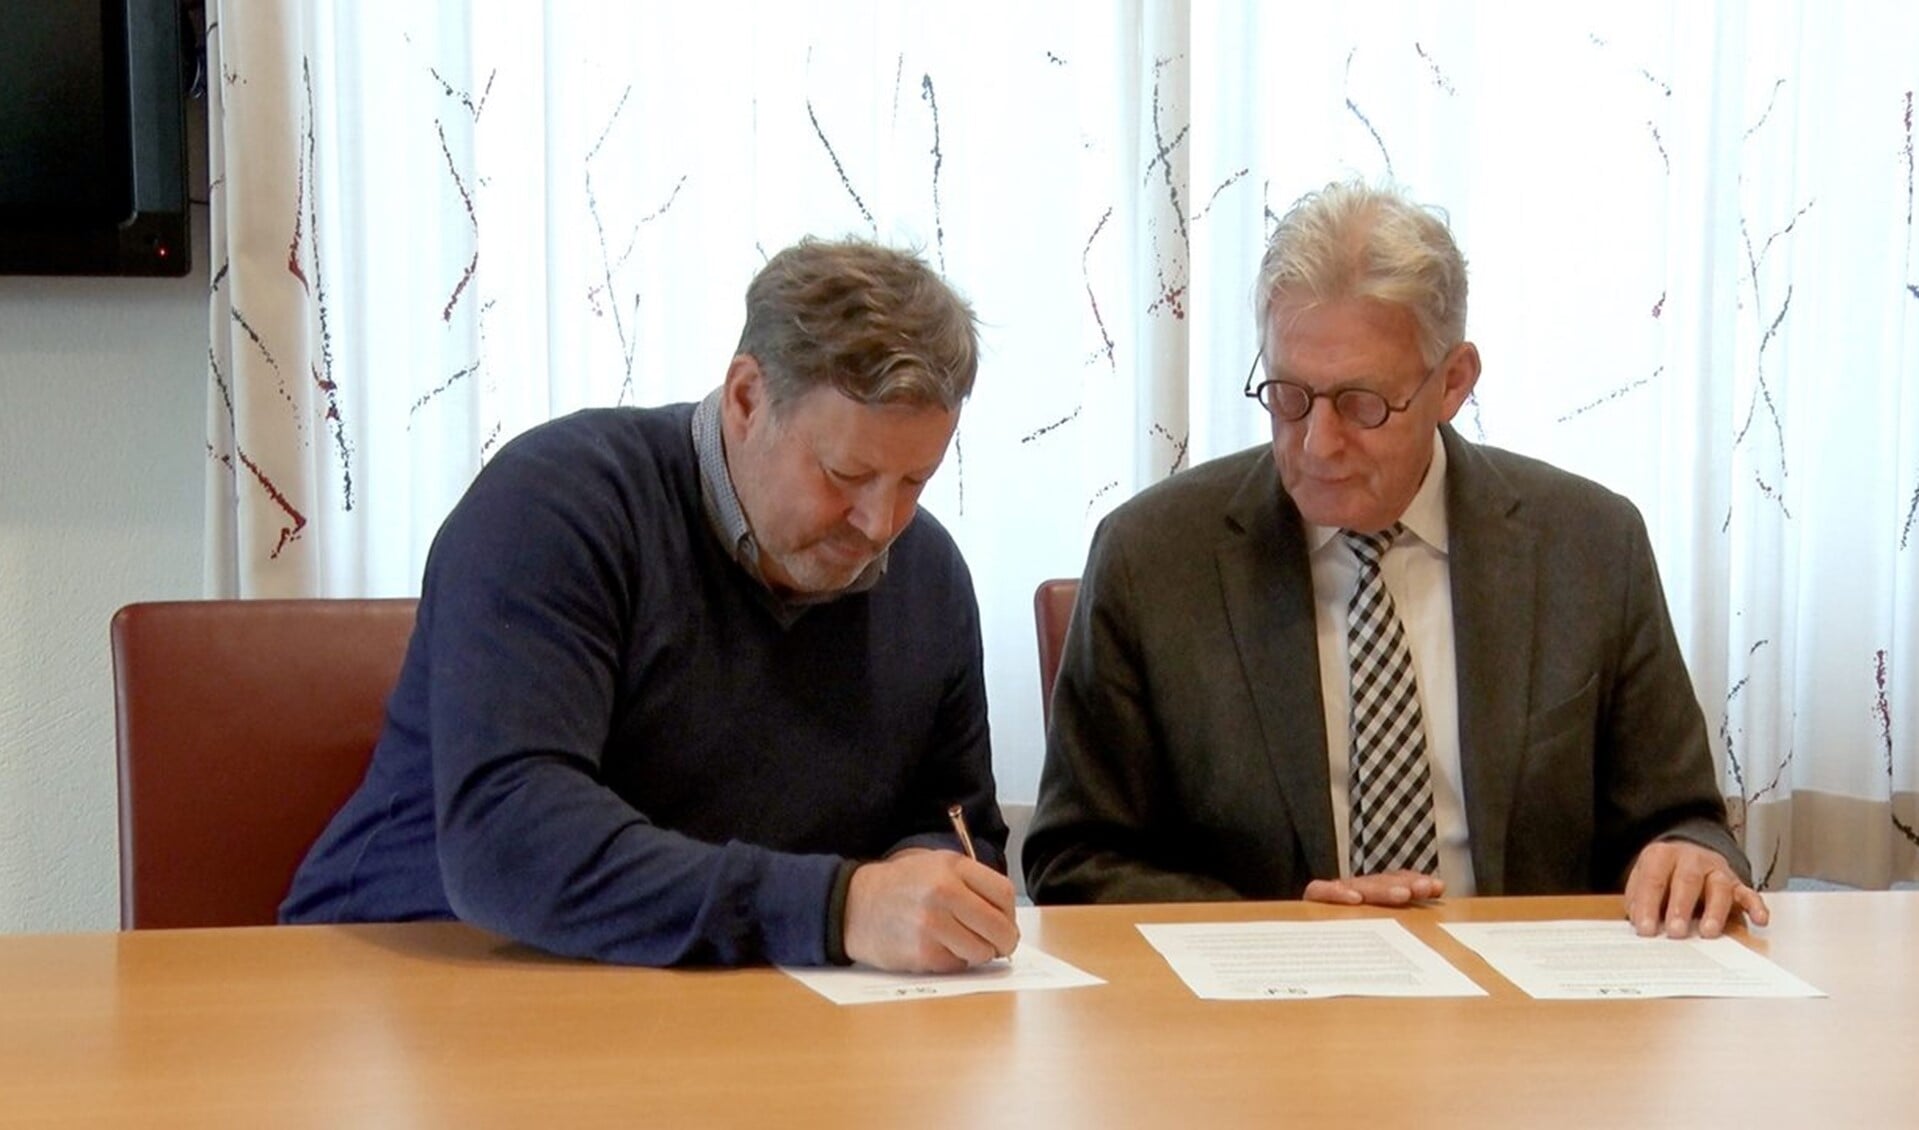 Wethouder Louis Swinkels (l) tekent het convenant. Rechts voorzitter van Stichting Normering Flexwonen, Koos Karssen. (Foto: Siris-tv)